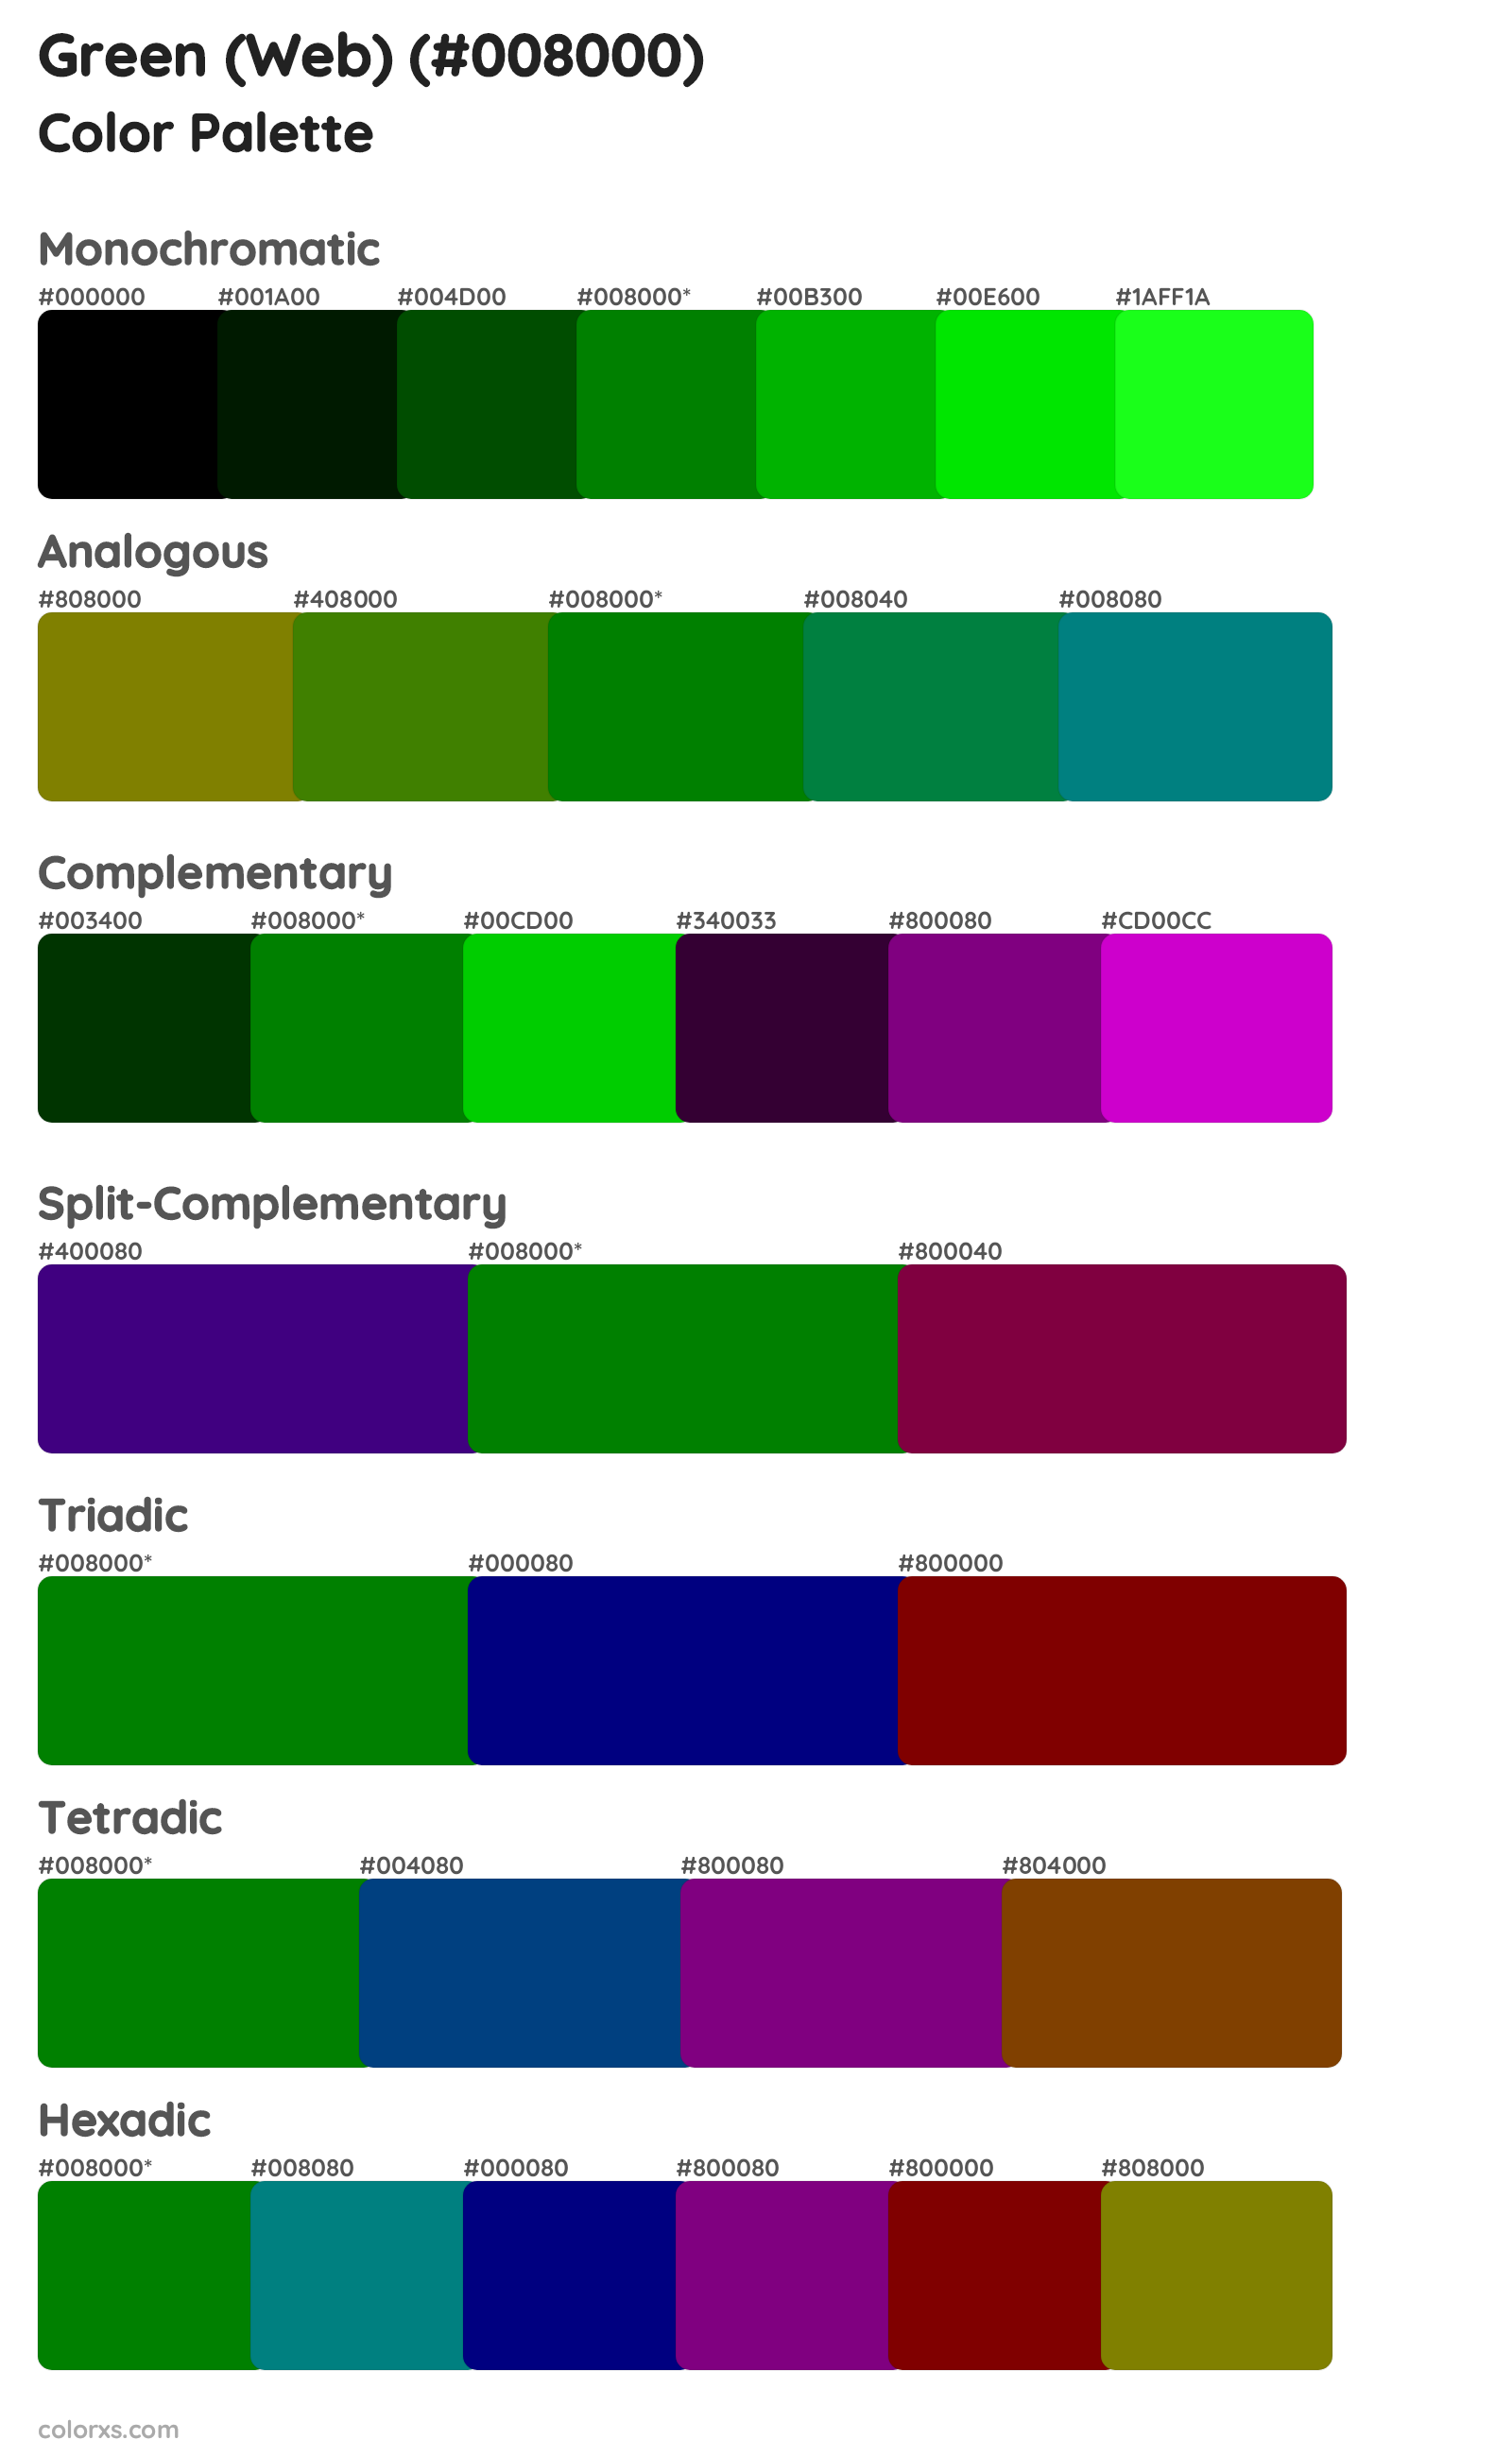 Green (Web) Color Scheme Palettes